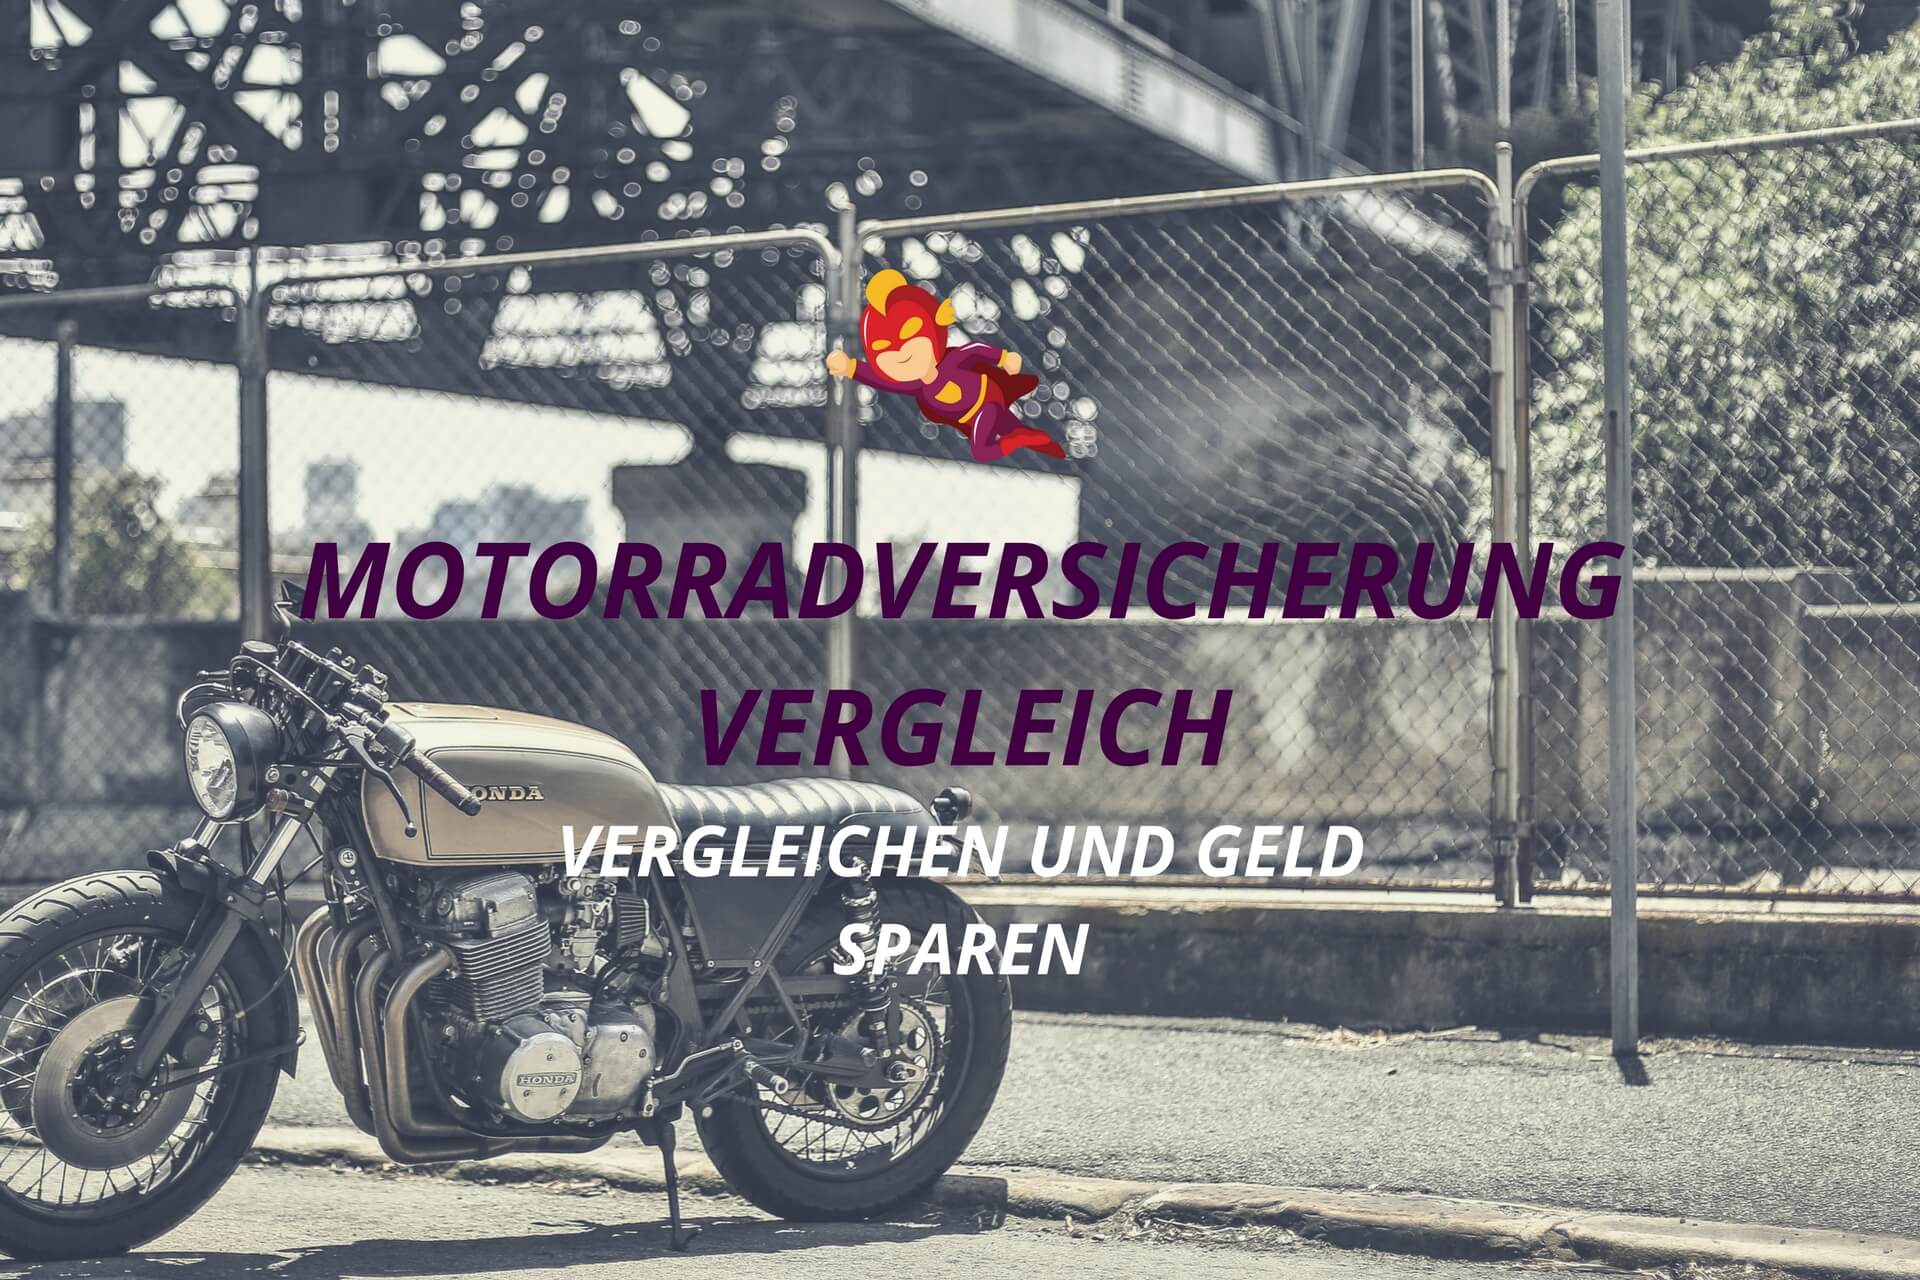 Motorradversicherung Vergleich - Finanzhelden.org